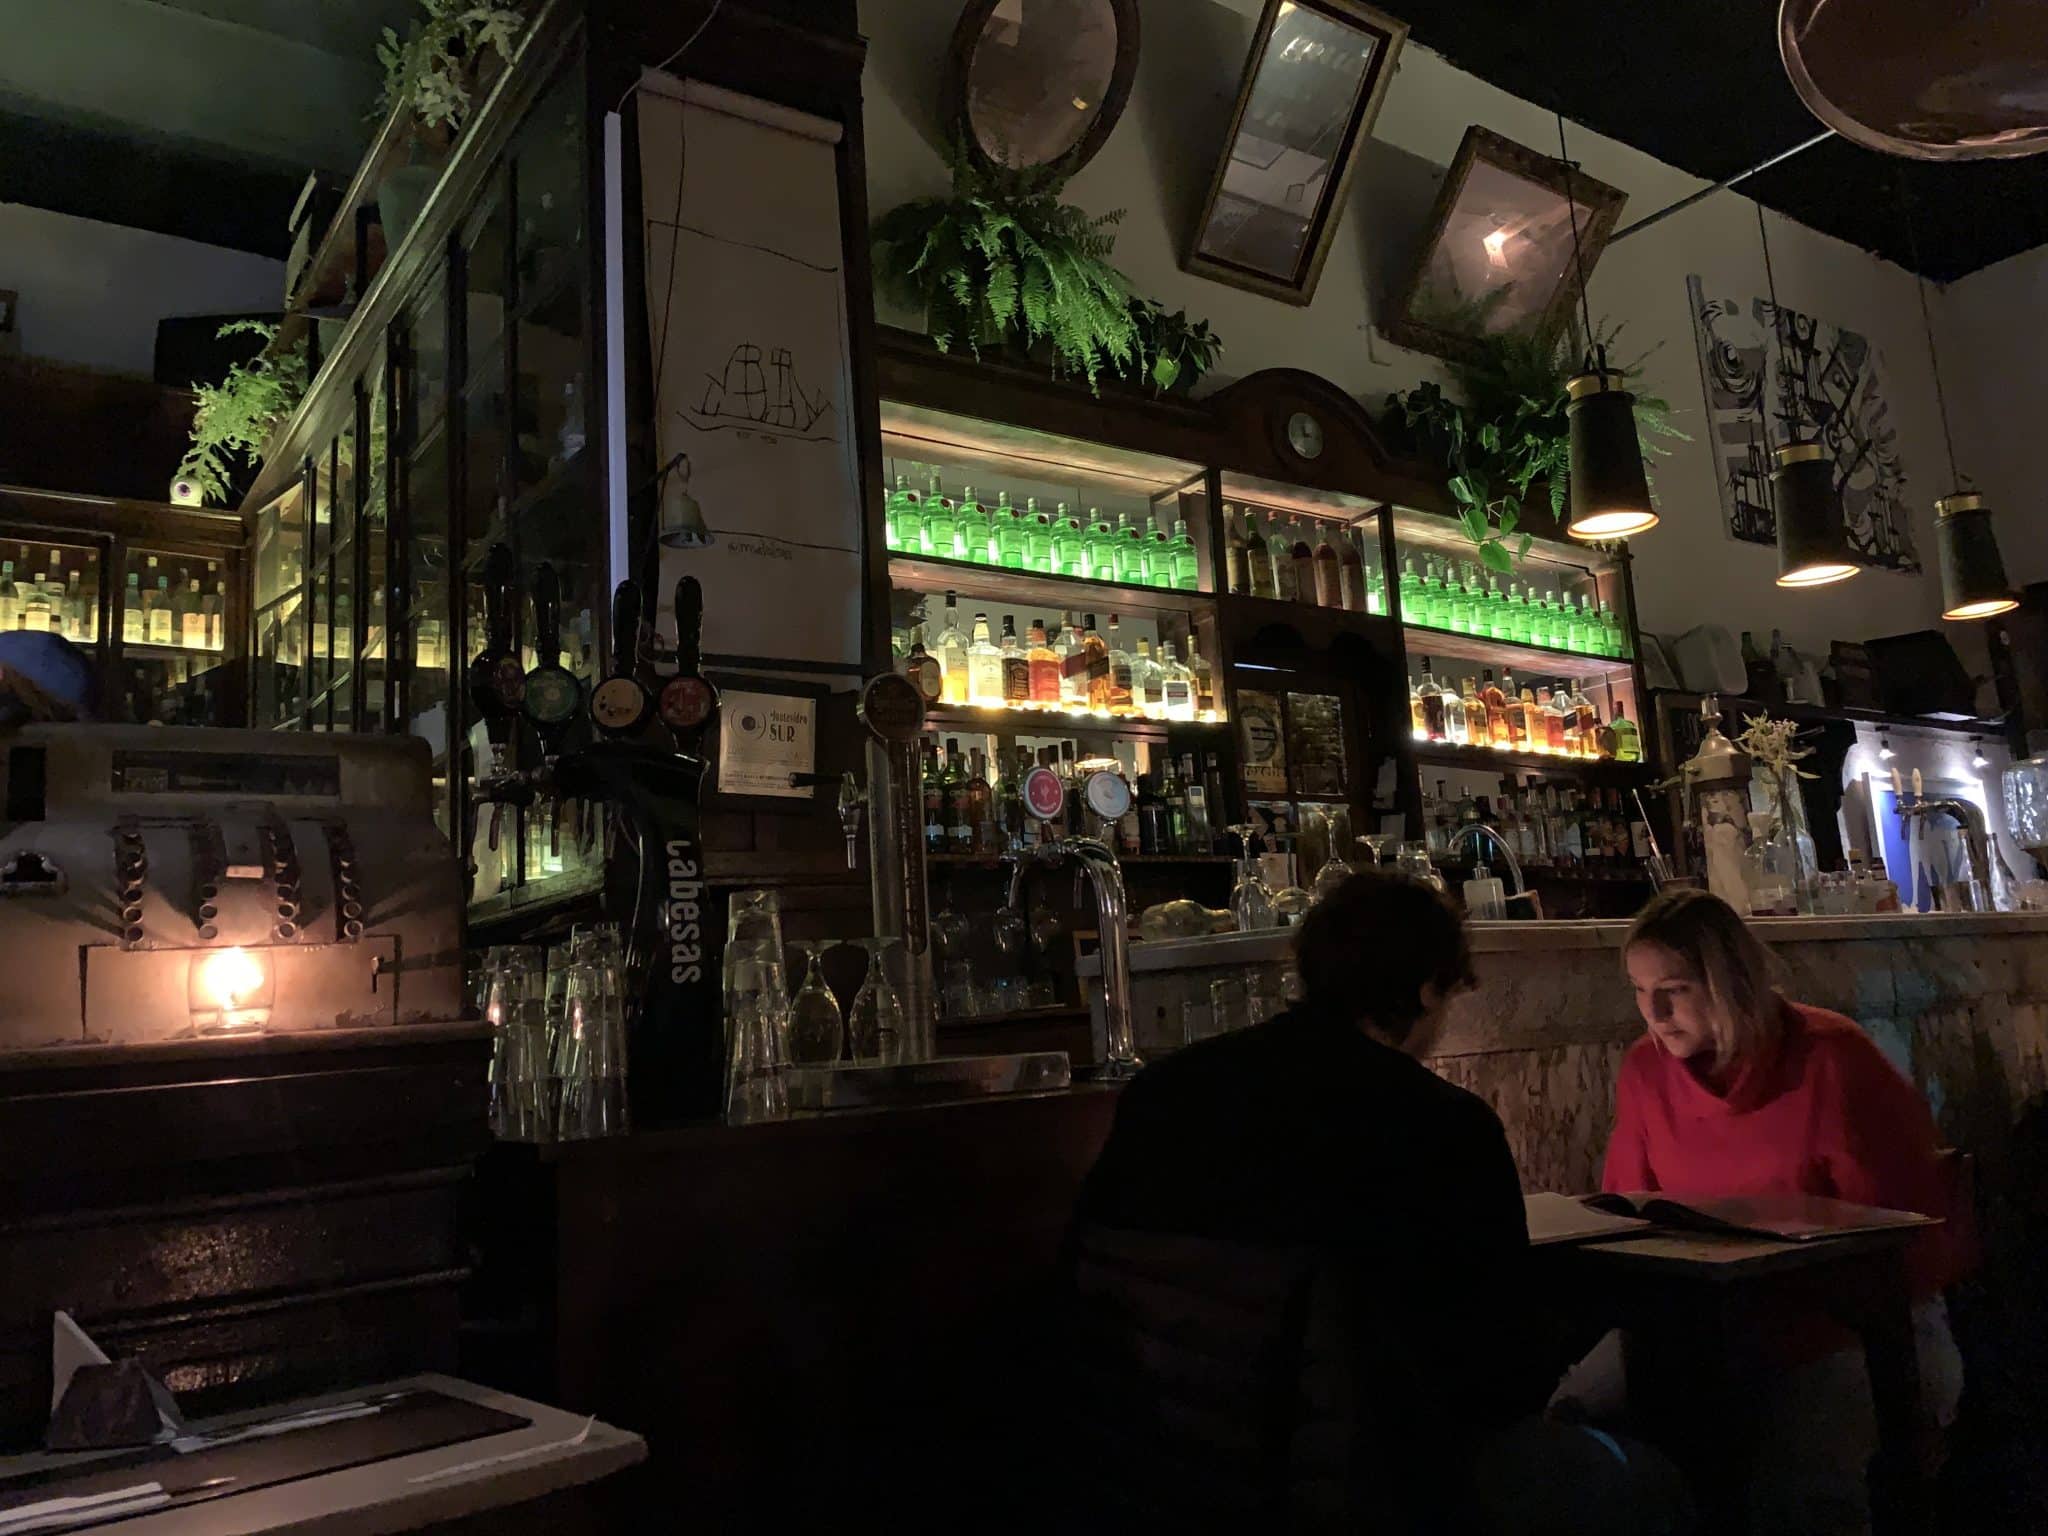 Restaurant Montevideo al Sur dans notre article Visiter Montevideo en Uruguay : Que faire et voir à Montevideo en 10 incontournables #visitermontevideo #montevideo #uruguay #incontournablesmontevideo #ameriquedusud